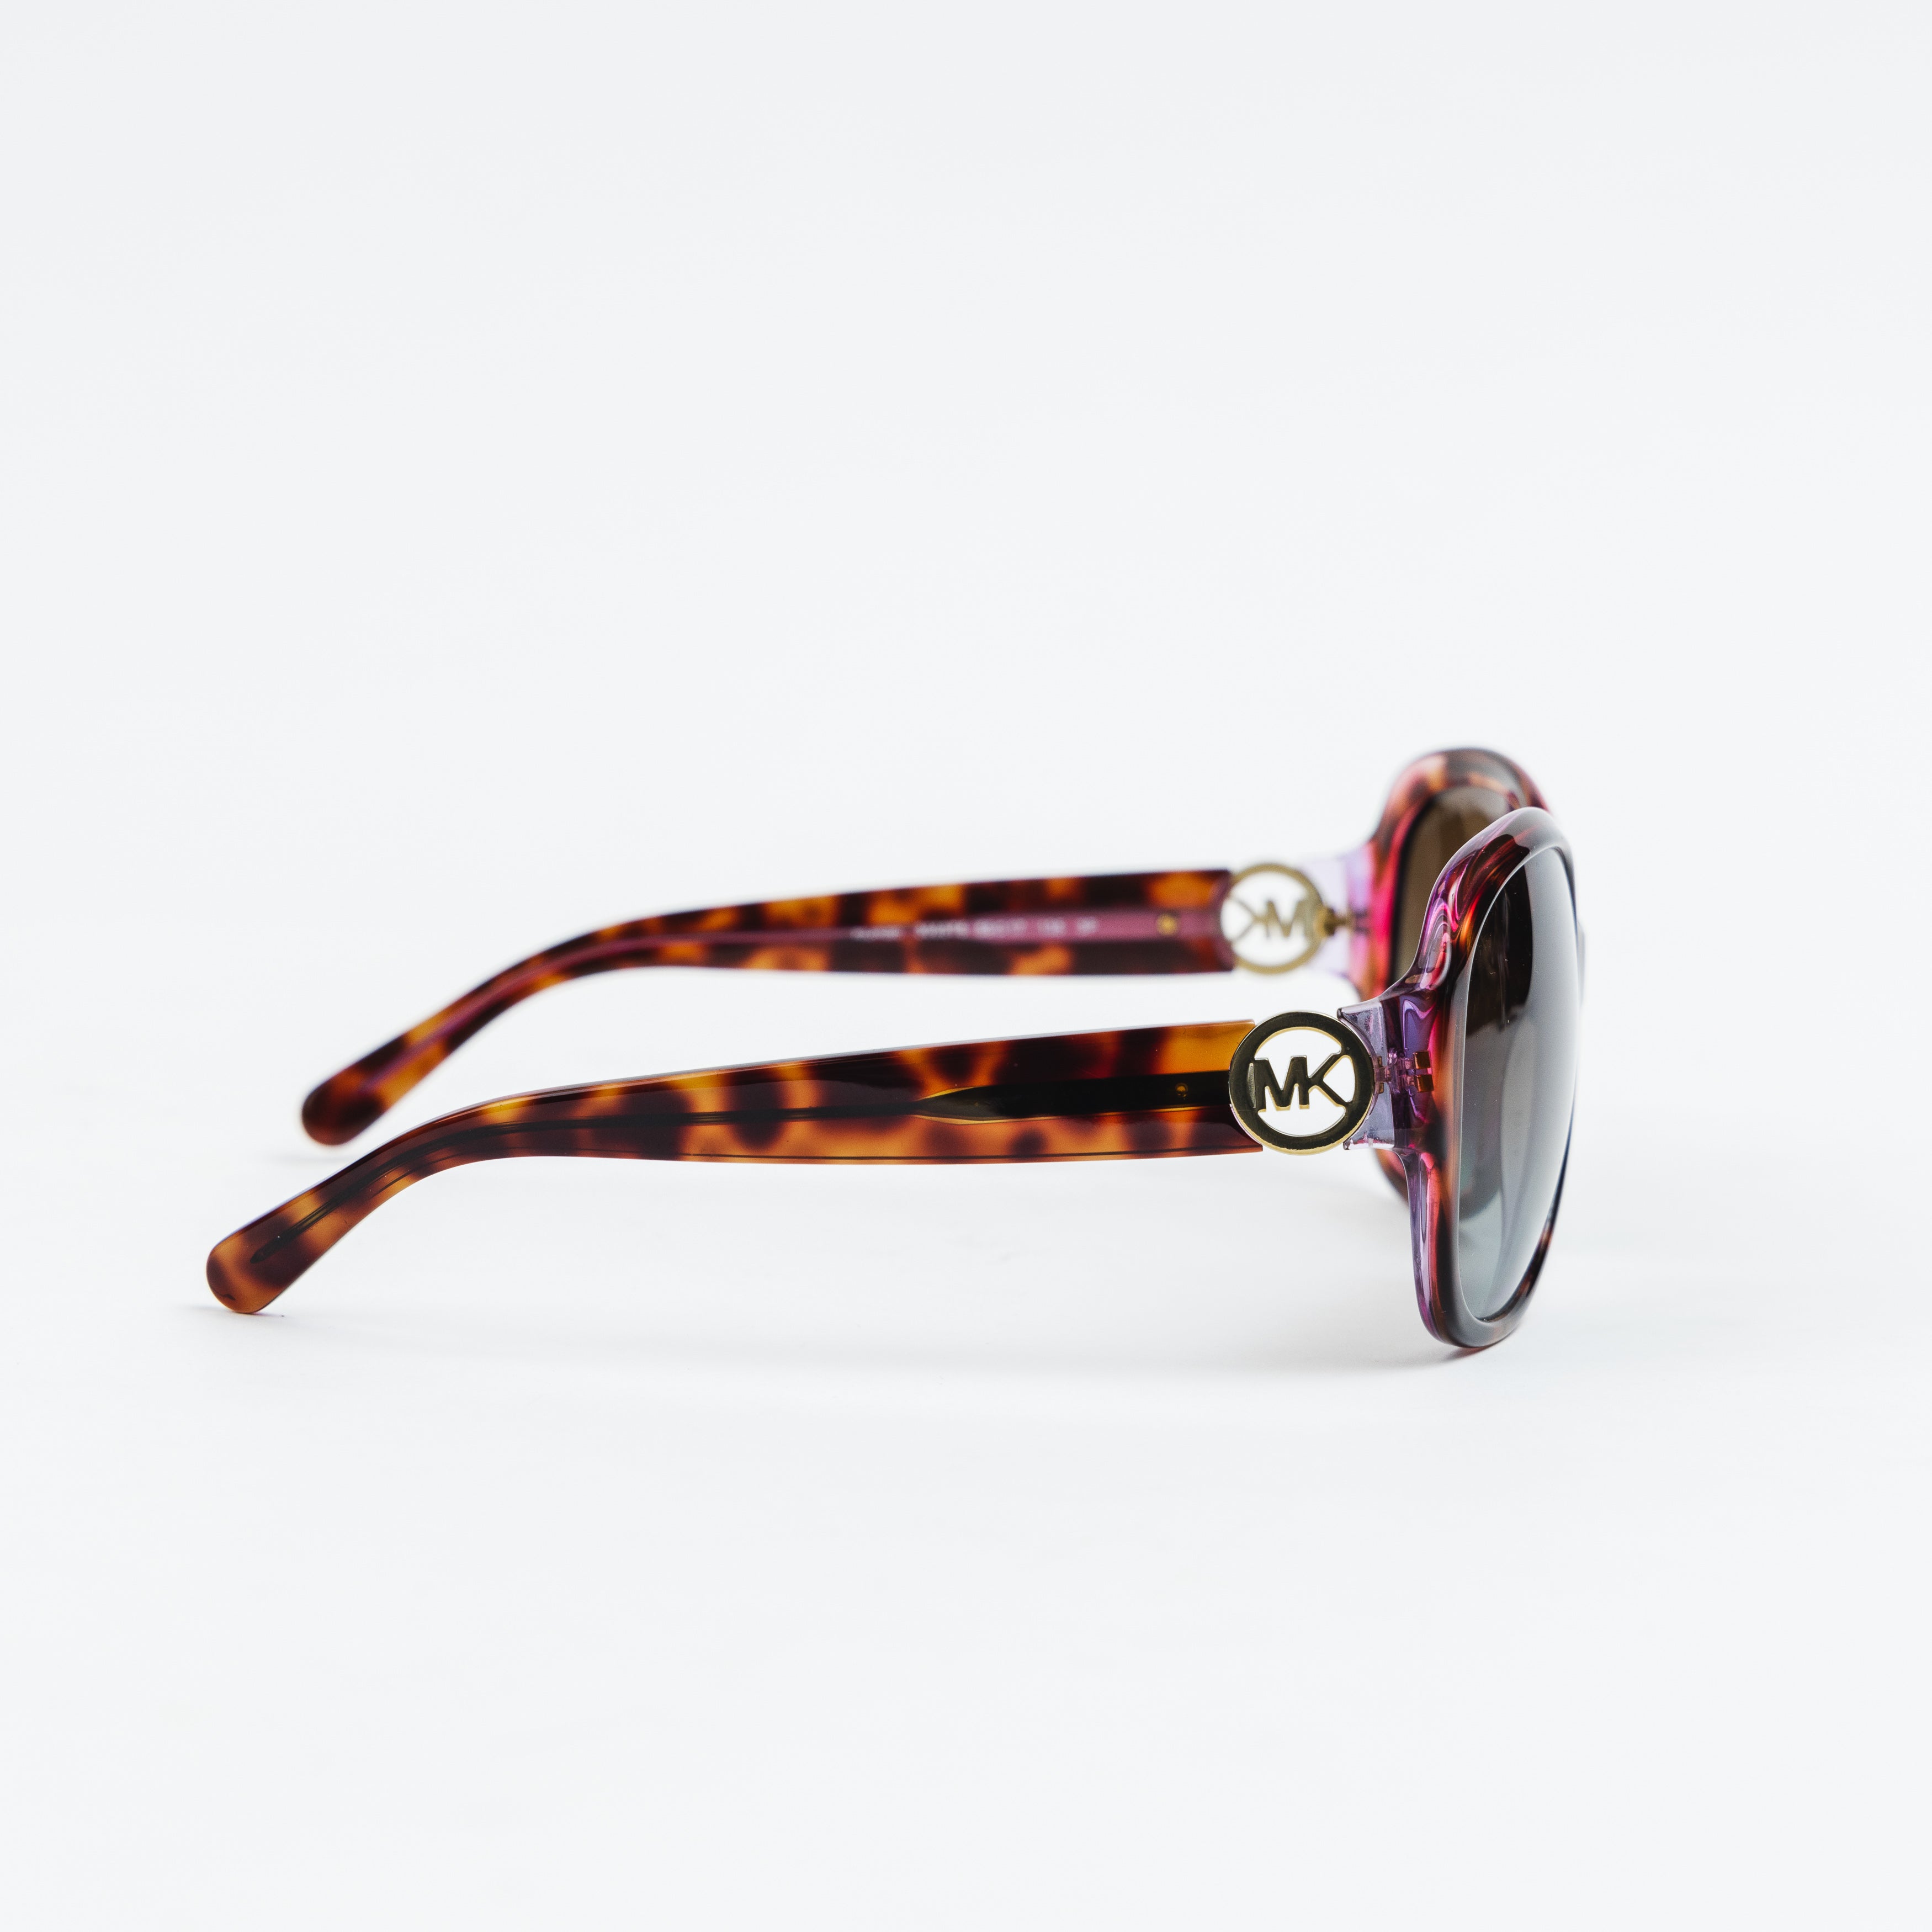 Michael Kors Kauai Sunglasses Sale Online  tabsonscom 1692400803